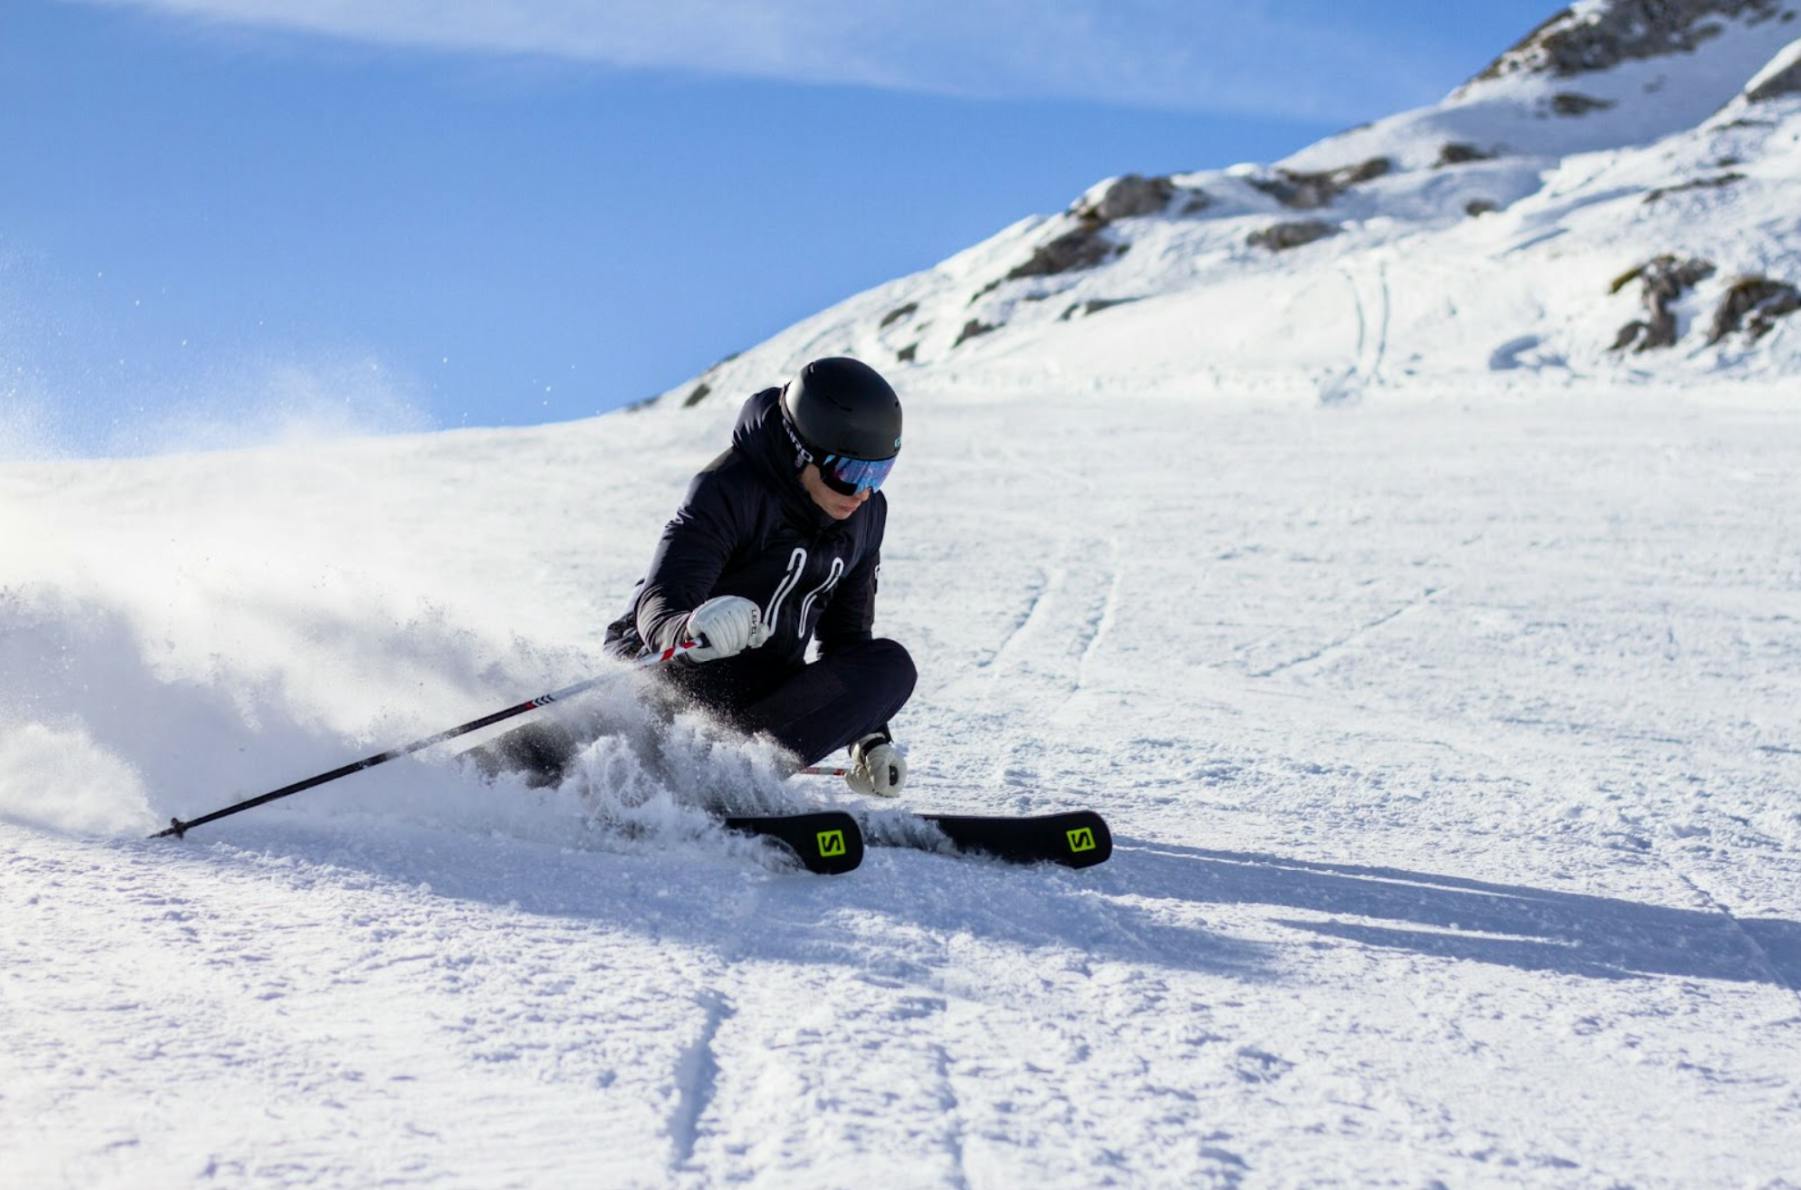 A skier carving down a ski run. 